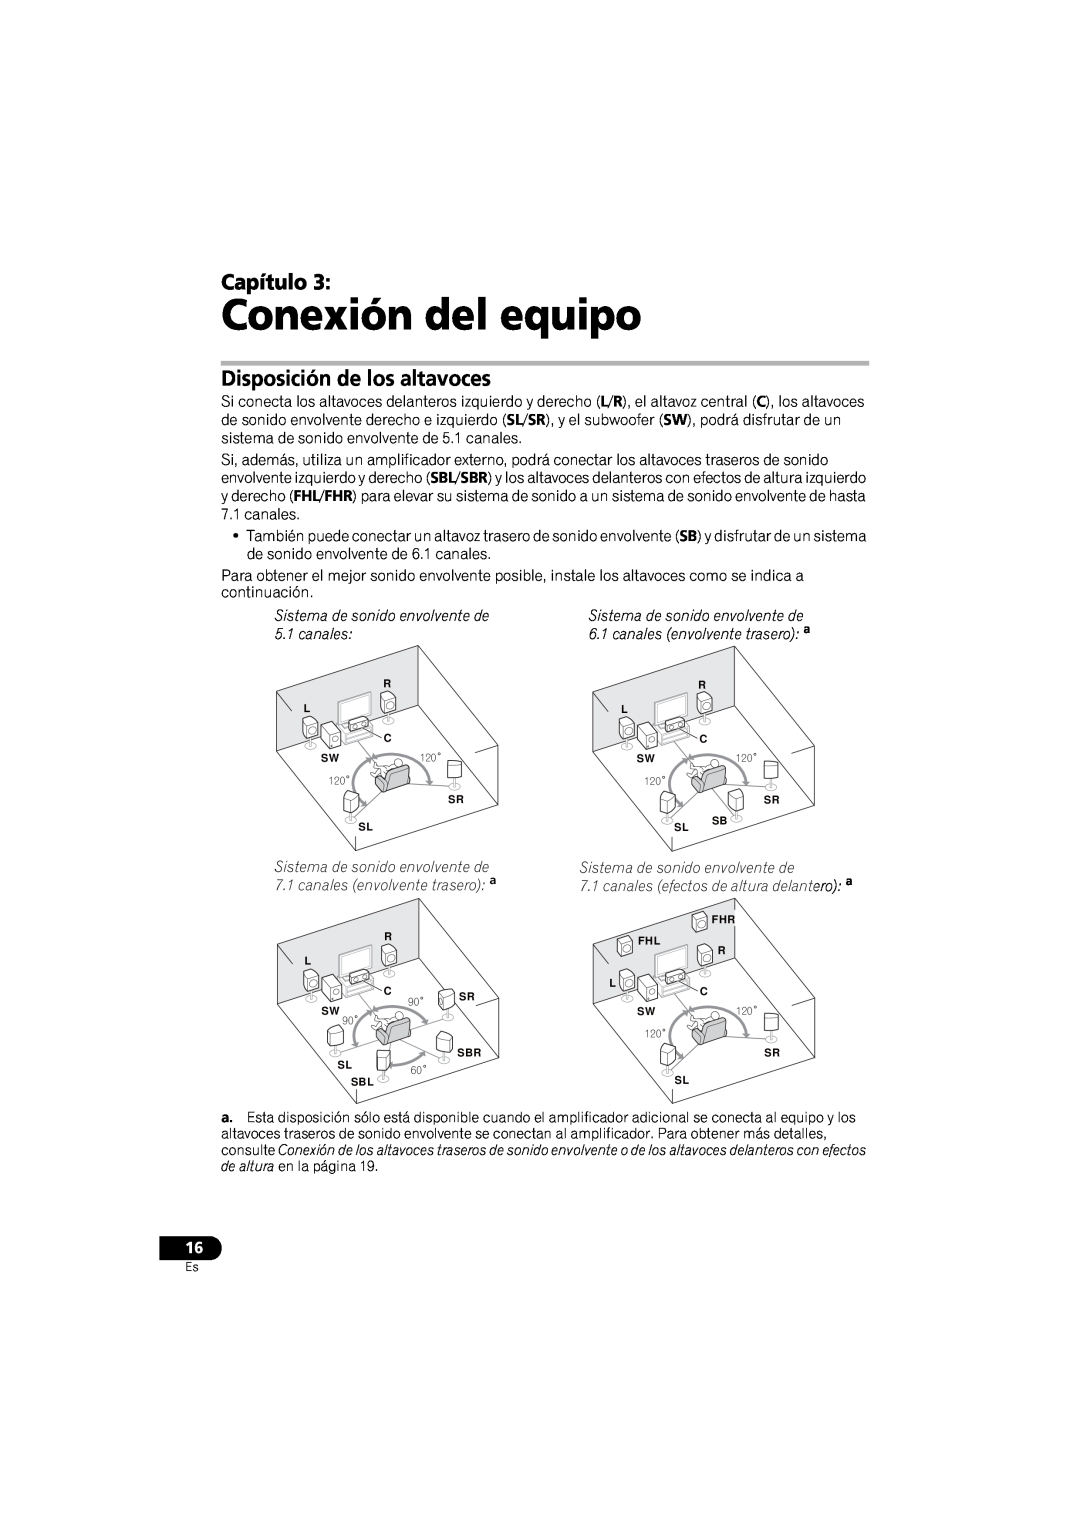 Pioneer VSX-520 manual Conexión del equipo, Capítulo, Disposición de los altavoces 